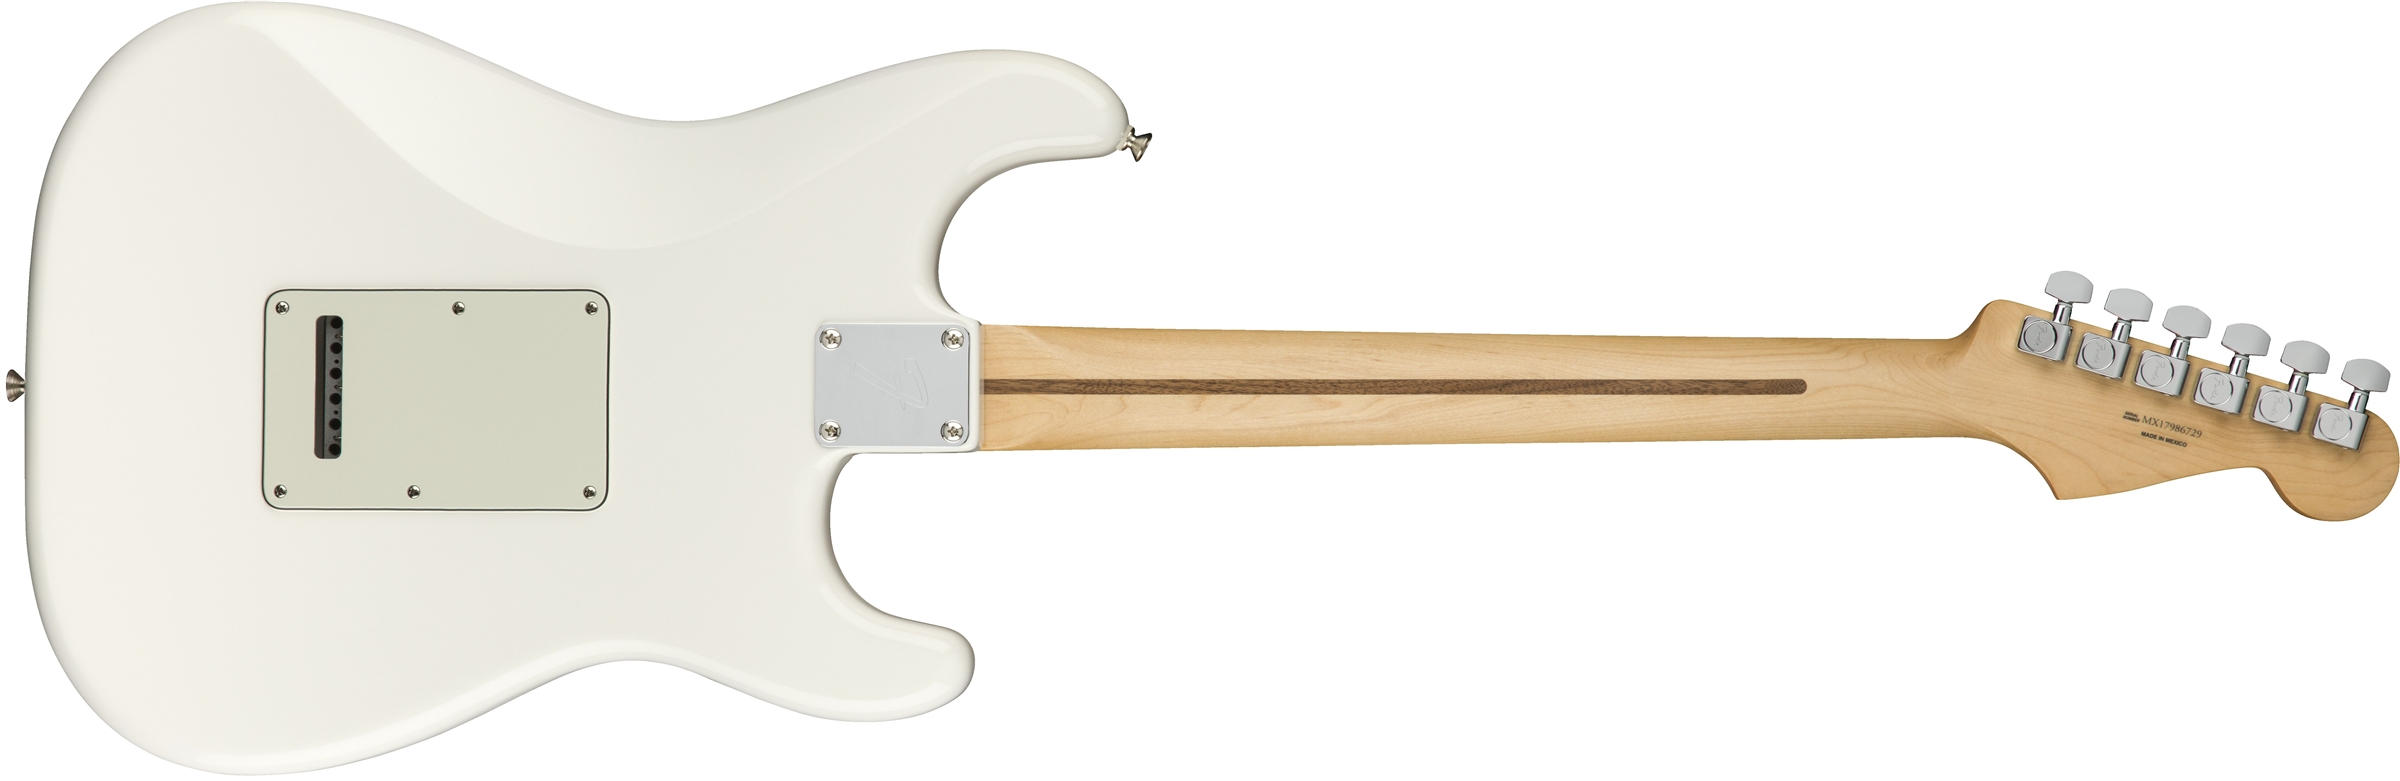 Player Stratocaster Left-Handed Polar White (Maple Fingerboard)背面画像